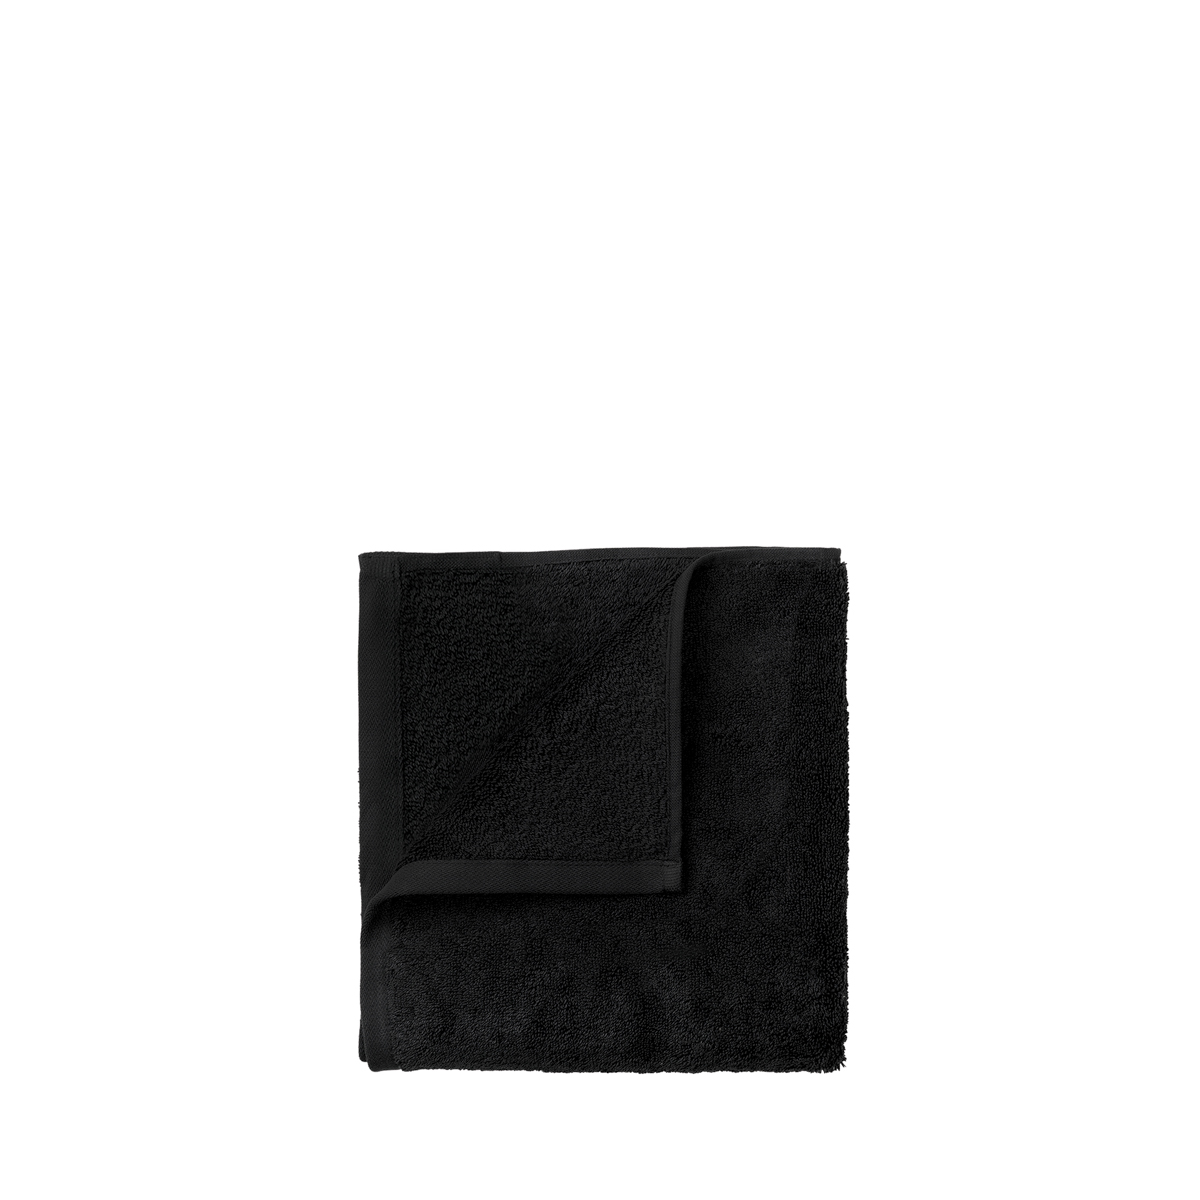 Set 4 Gästehandtücher -RIVA- Black. Material: Baumwolle. Von Blomus.